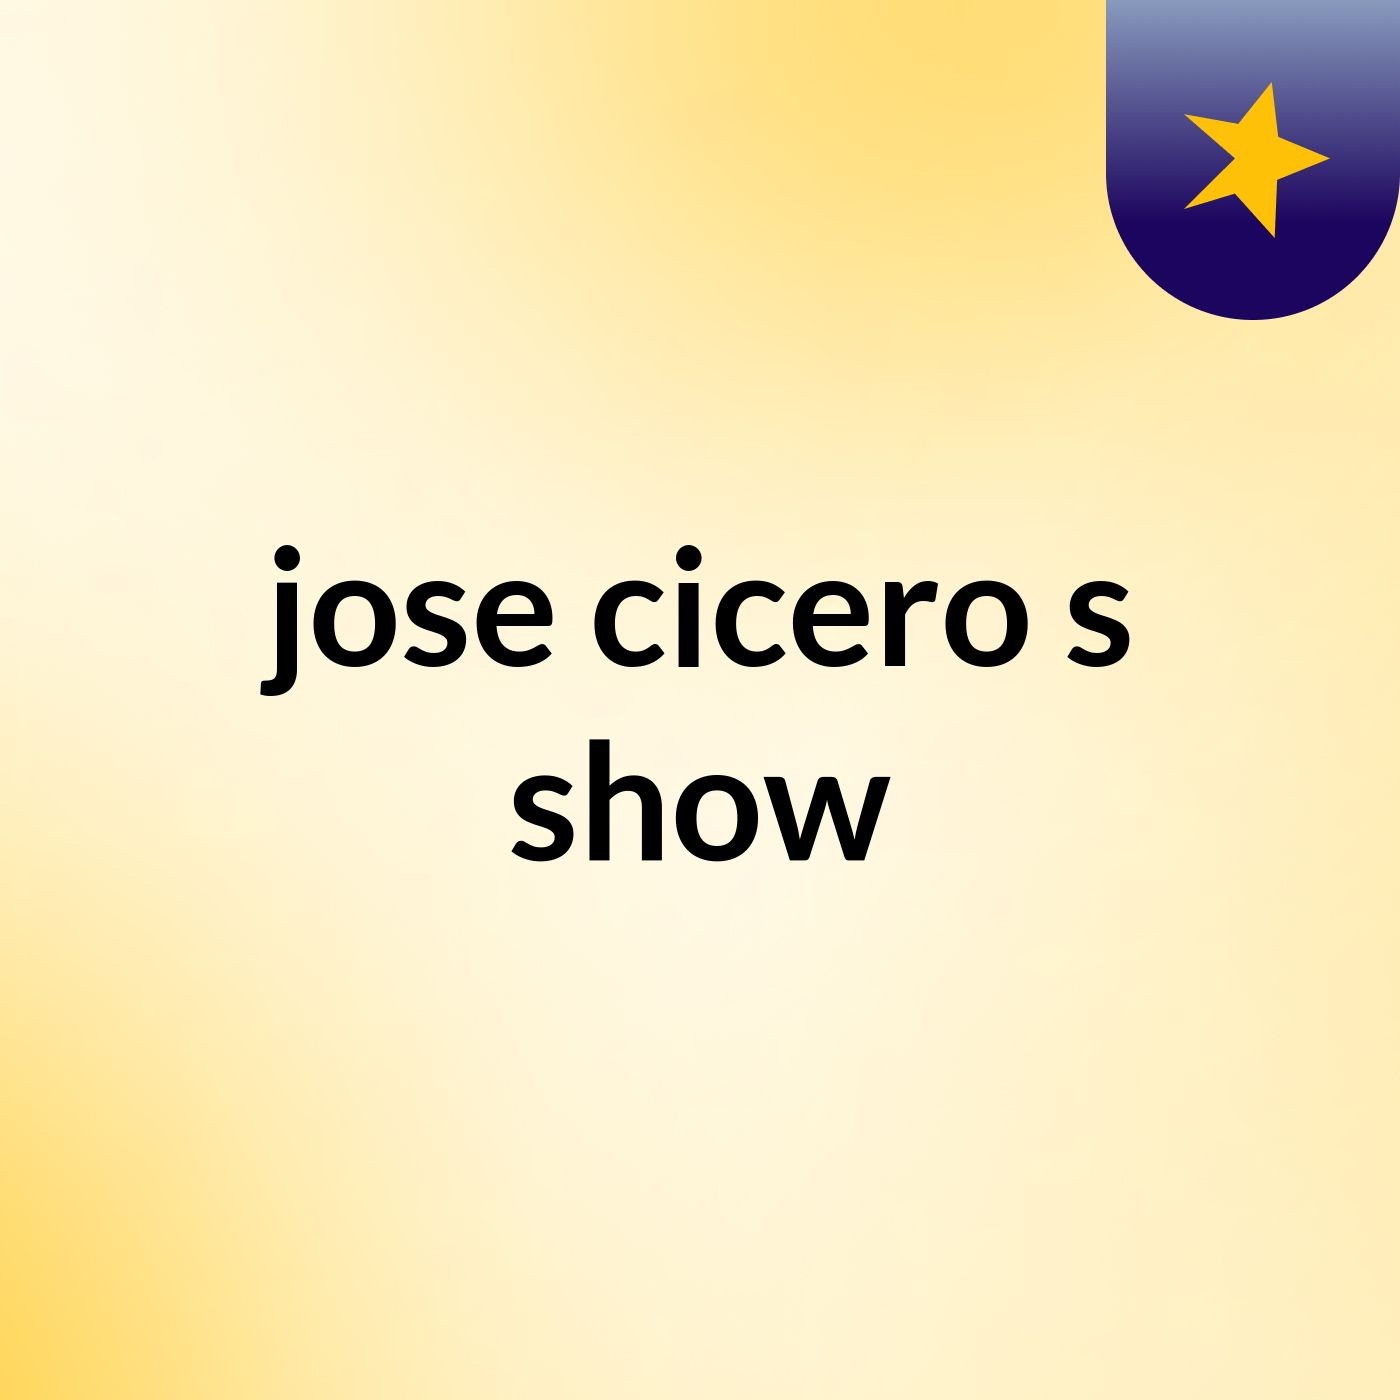 jose cicero's show